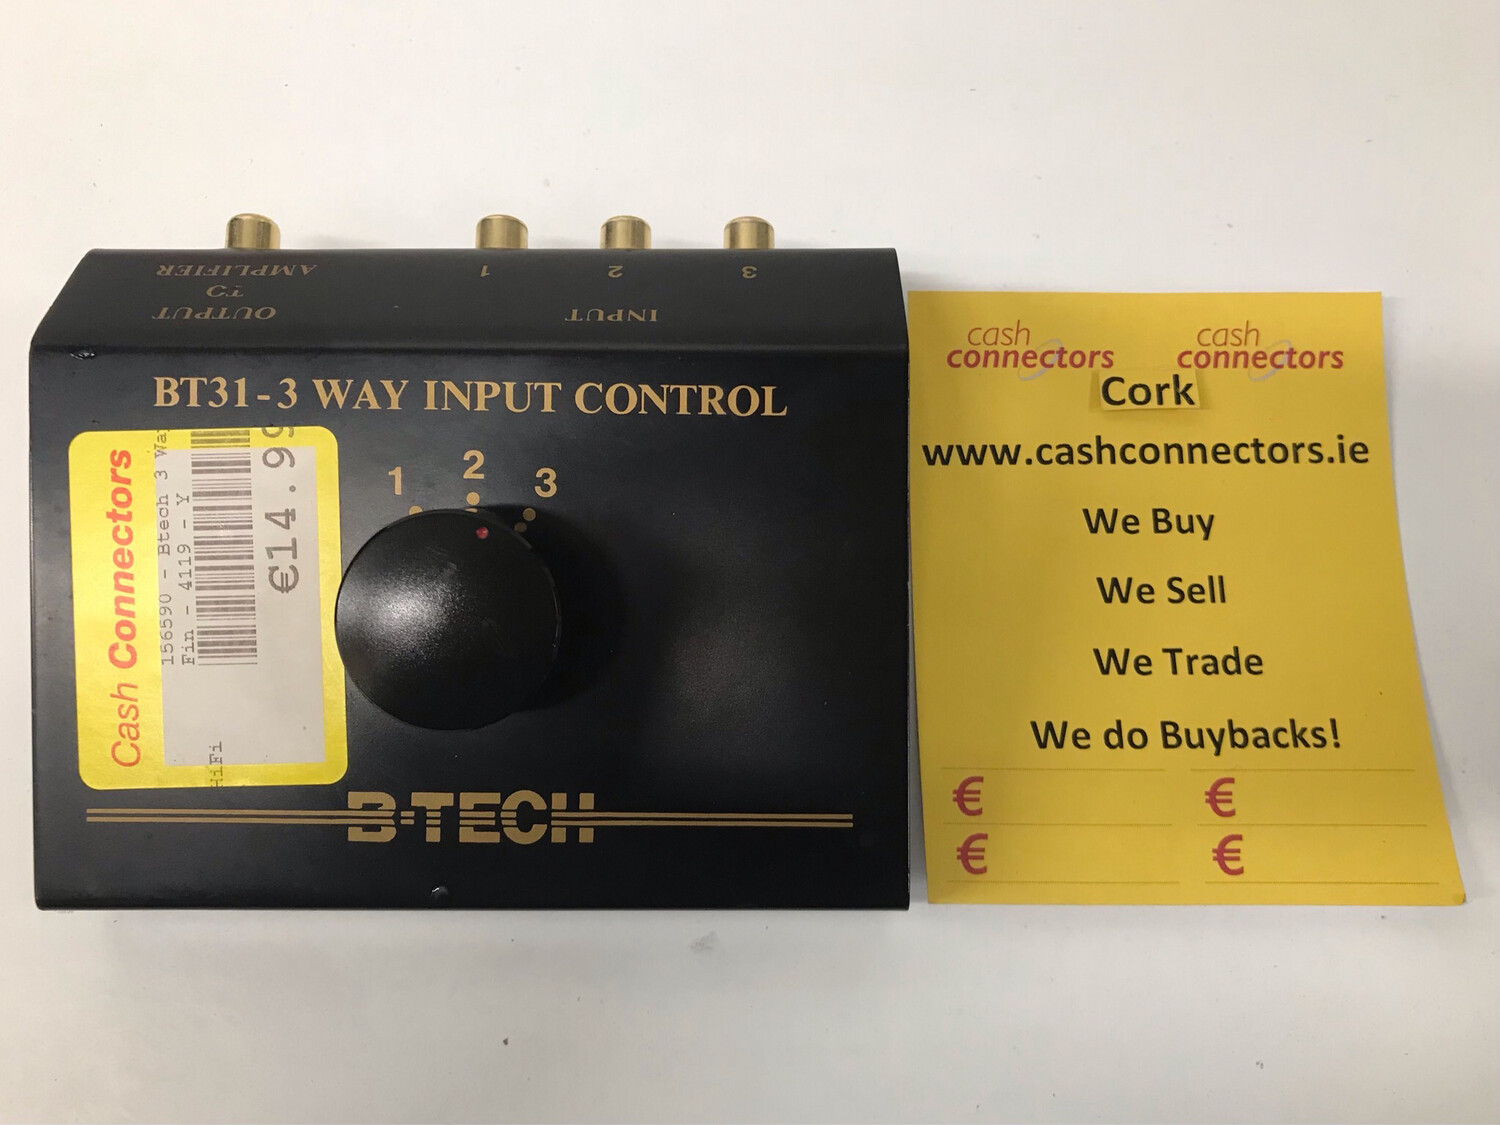 B-Tech BT31-3 Way Input Control